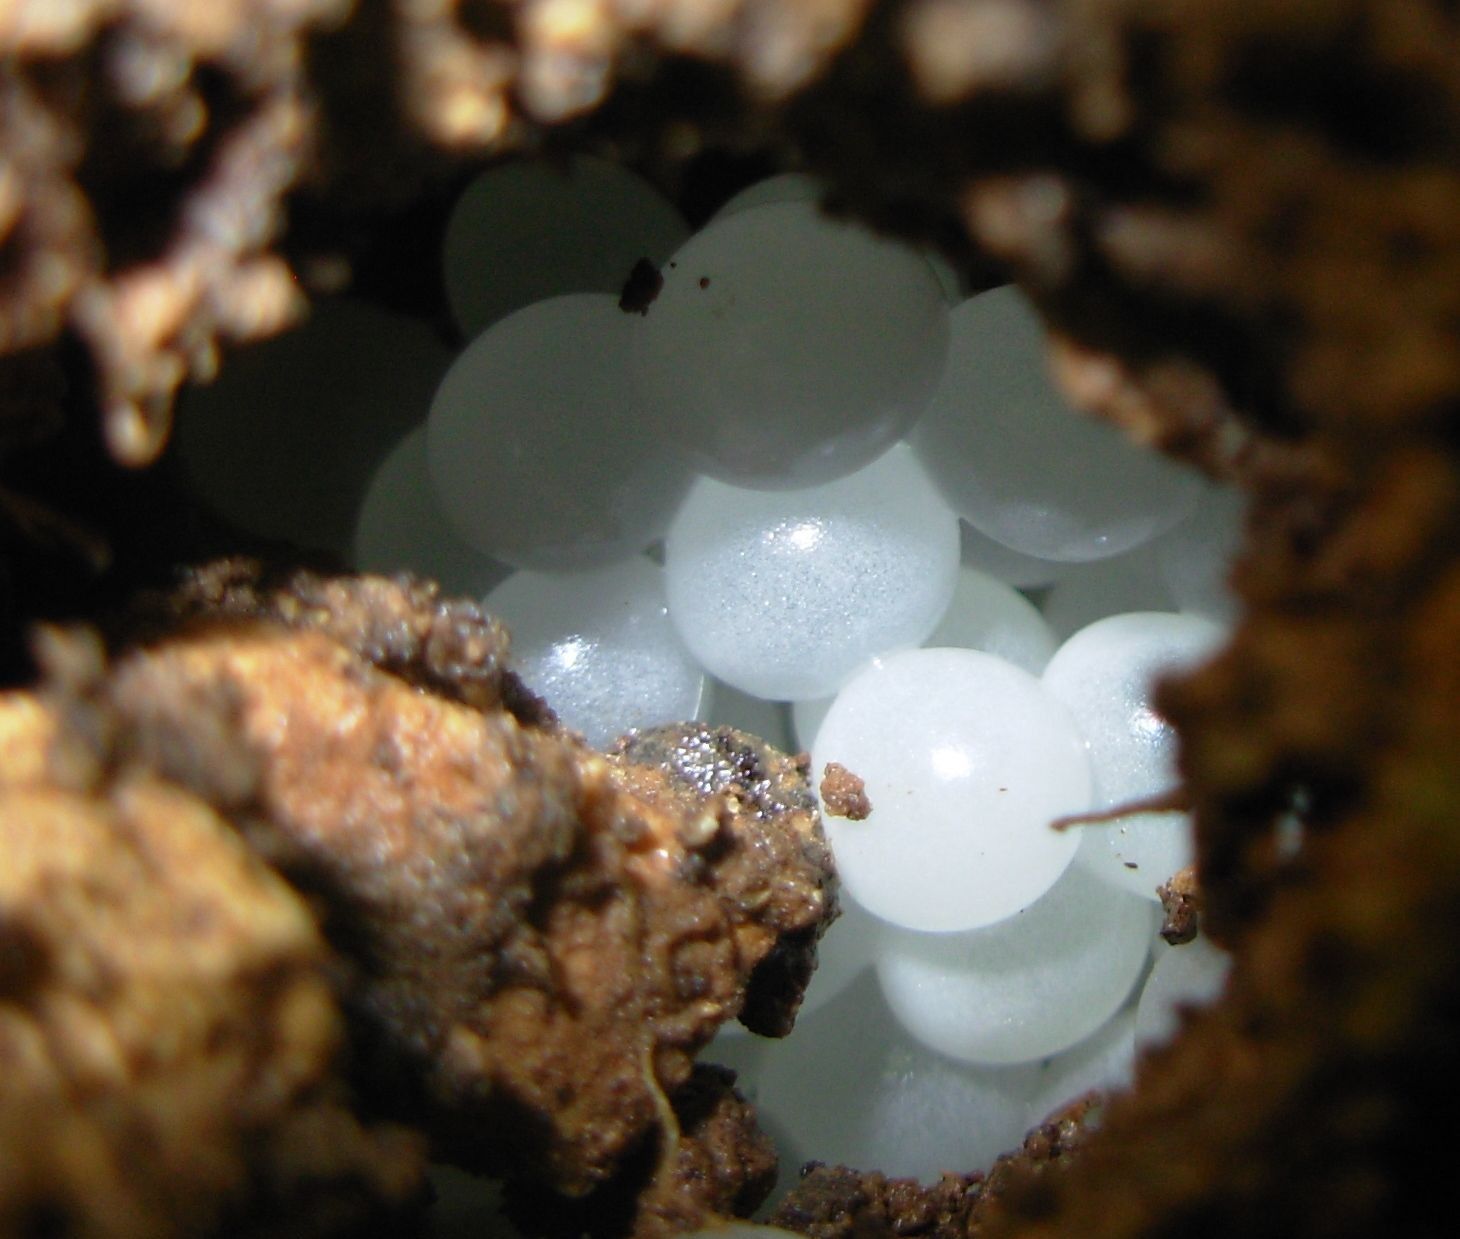 Escargot eggs bury in the soil 